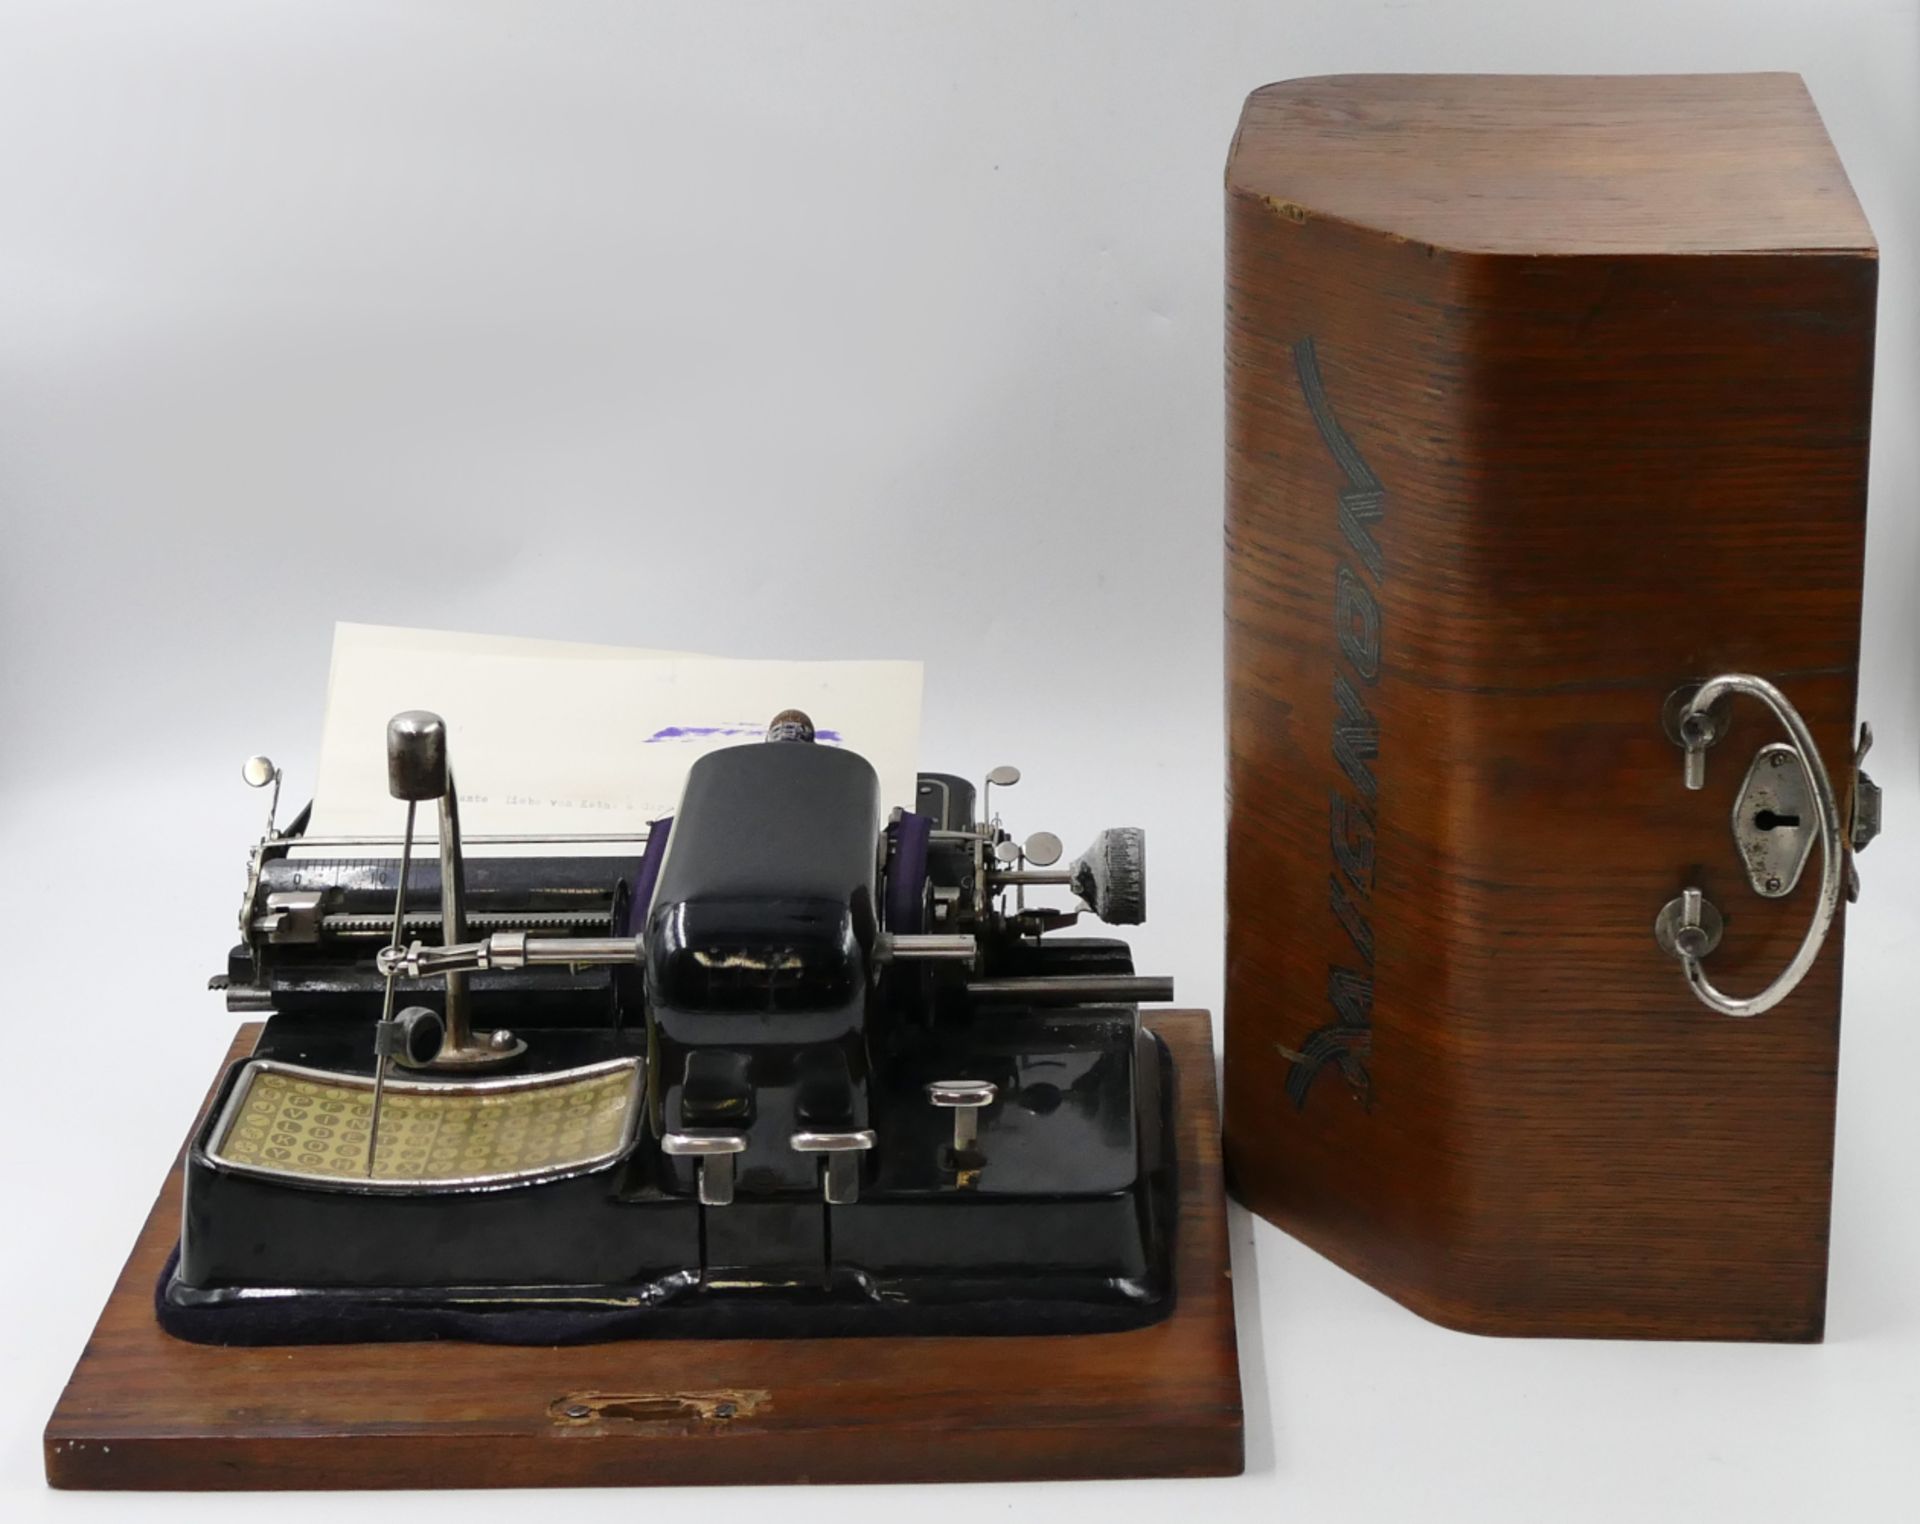 1 Typenwalz-Schreibmaschine AEG "Mignon" wohl "Modell 4" von 1923 bis 1933, ca. B 30cm, mit Transpor - Image 3 of 3